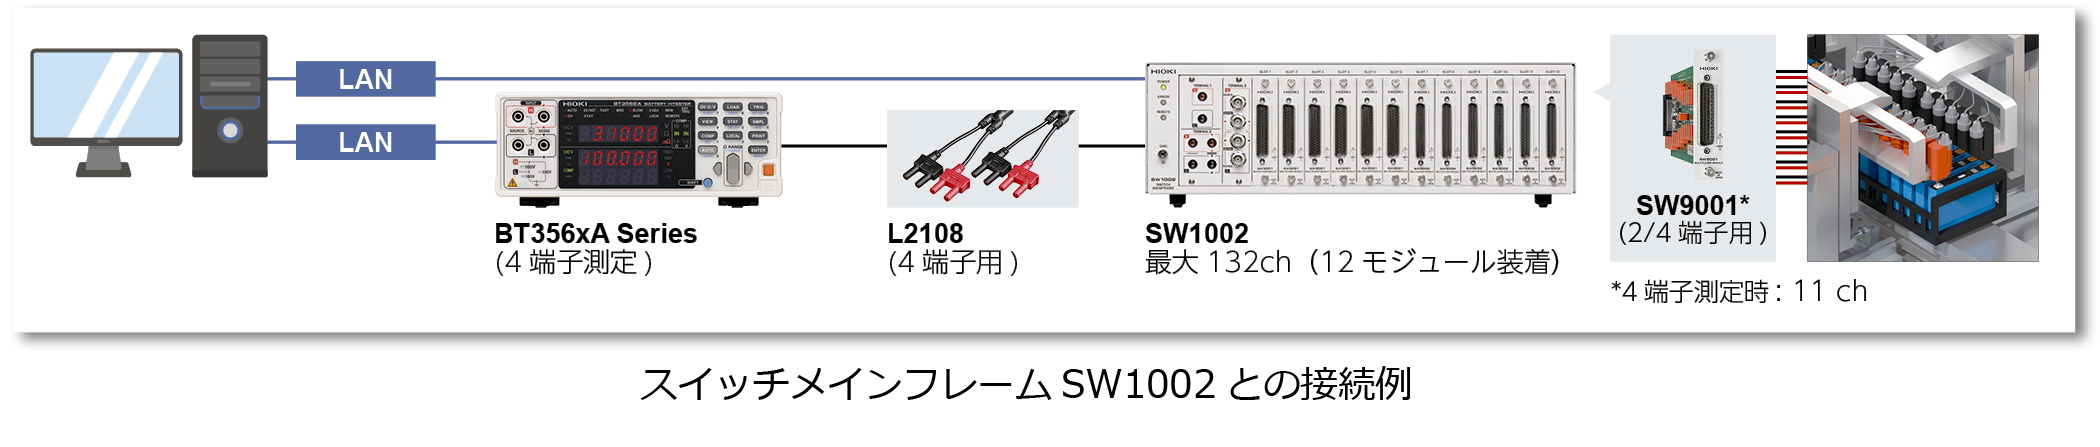 SW1002-BT356x.jpg